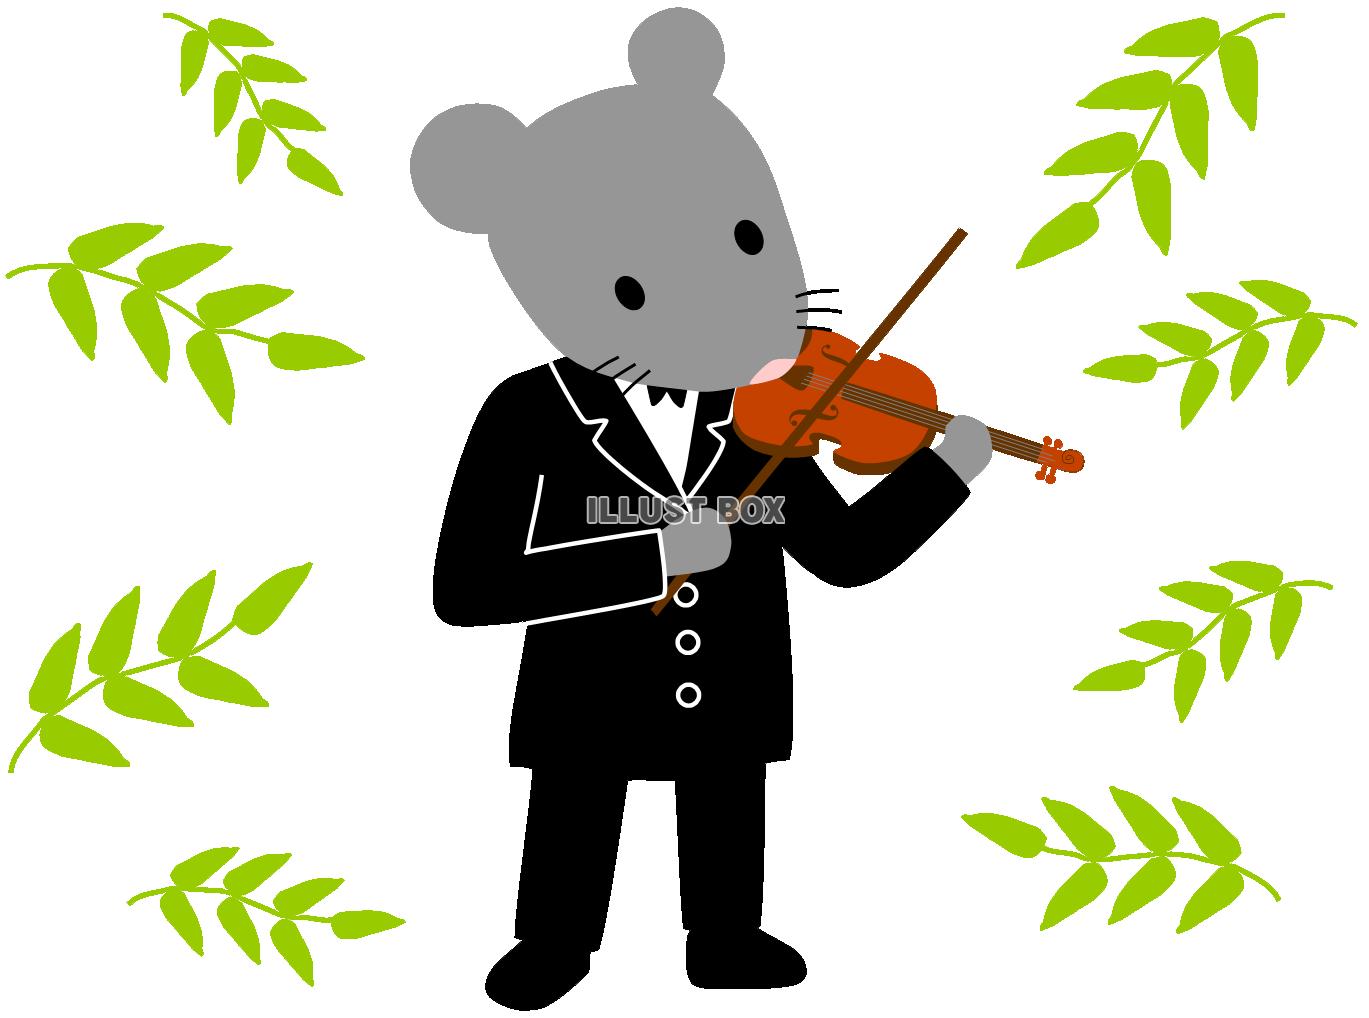 無料イラスト バイオリンを弾くねずみと葉っぱ 楽器を演奏する動物 ネズミ